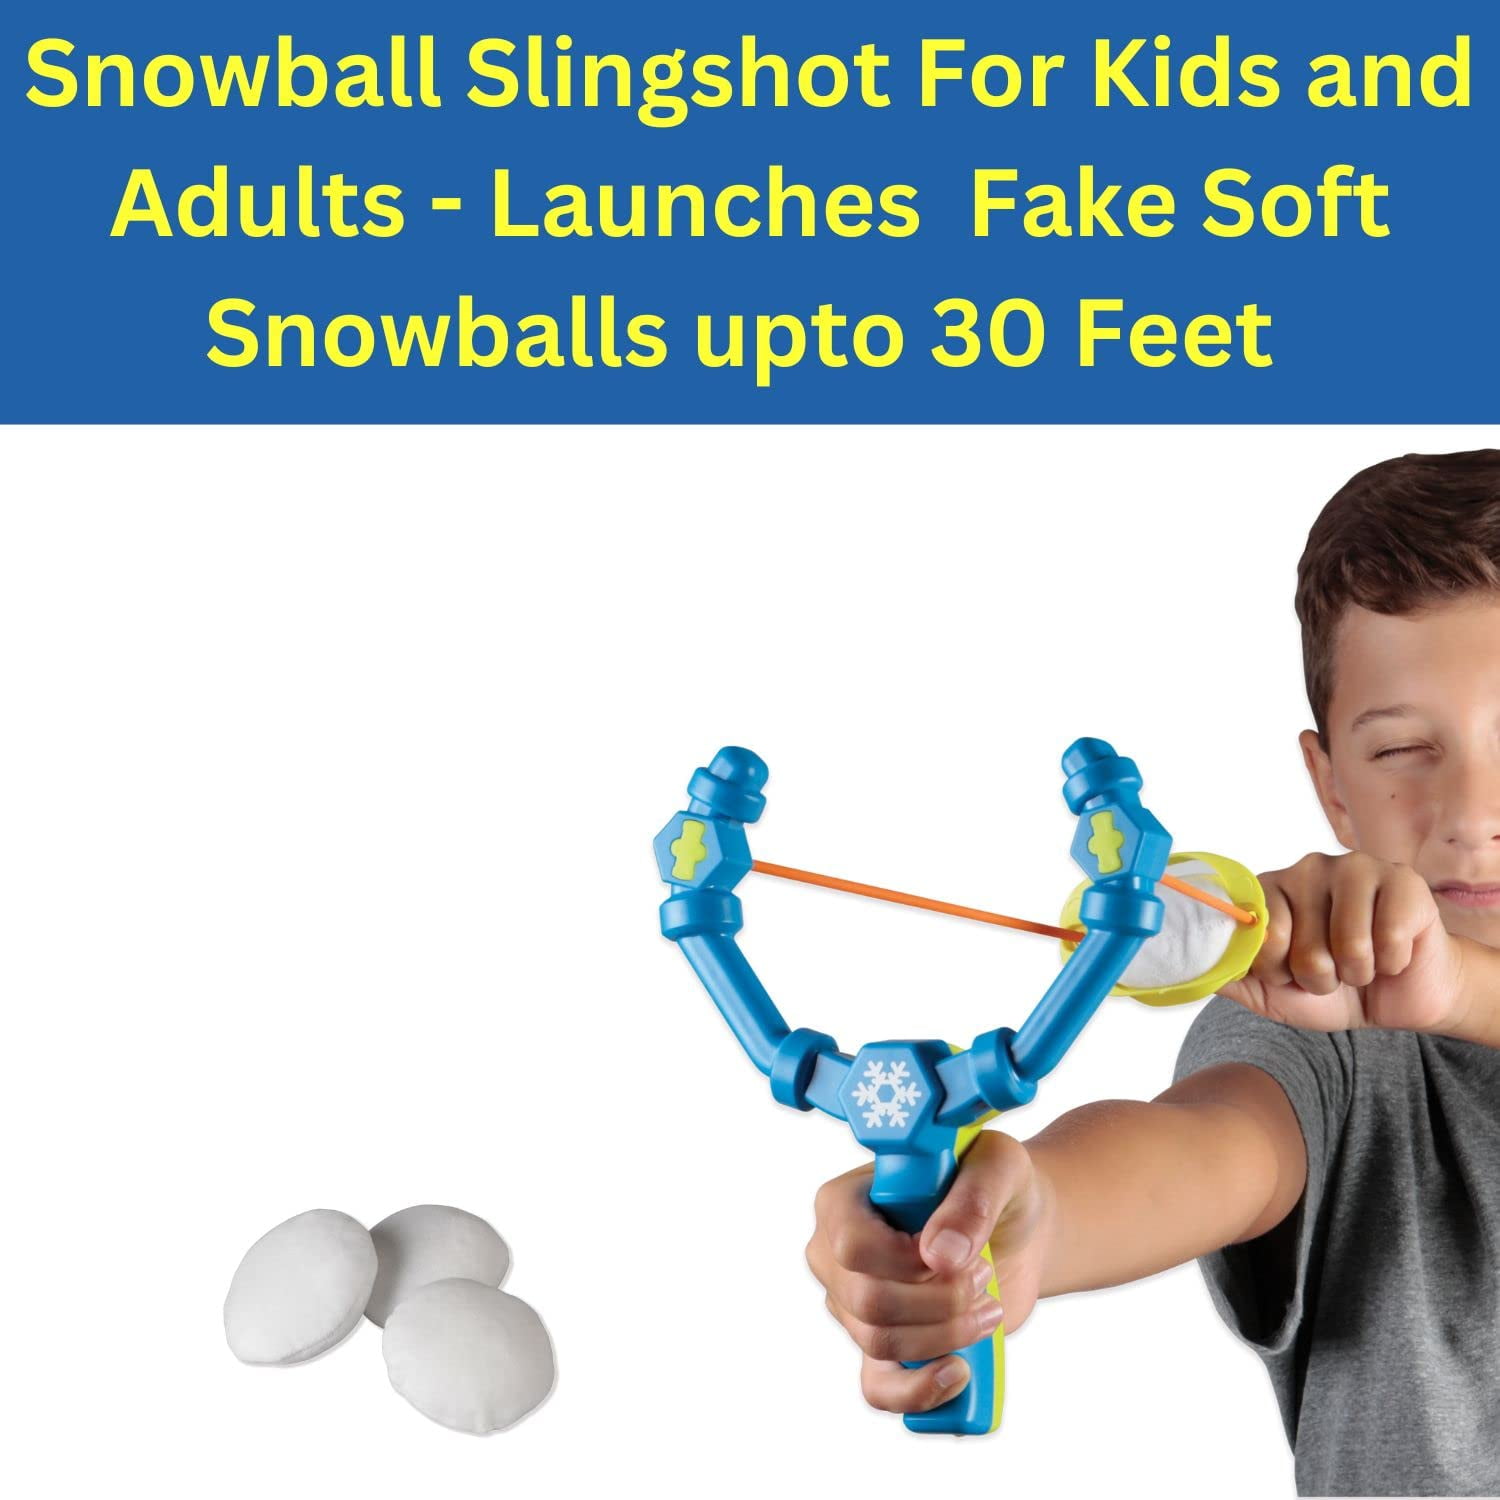 Indoor Activities for Kids: Instant Indoor Snowball Fight